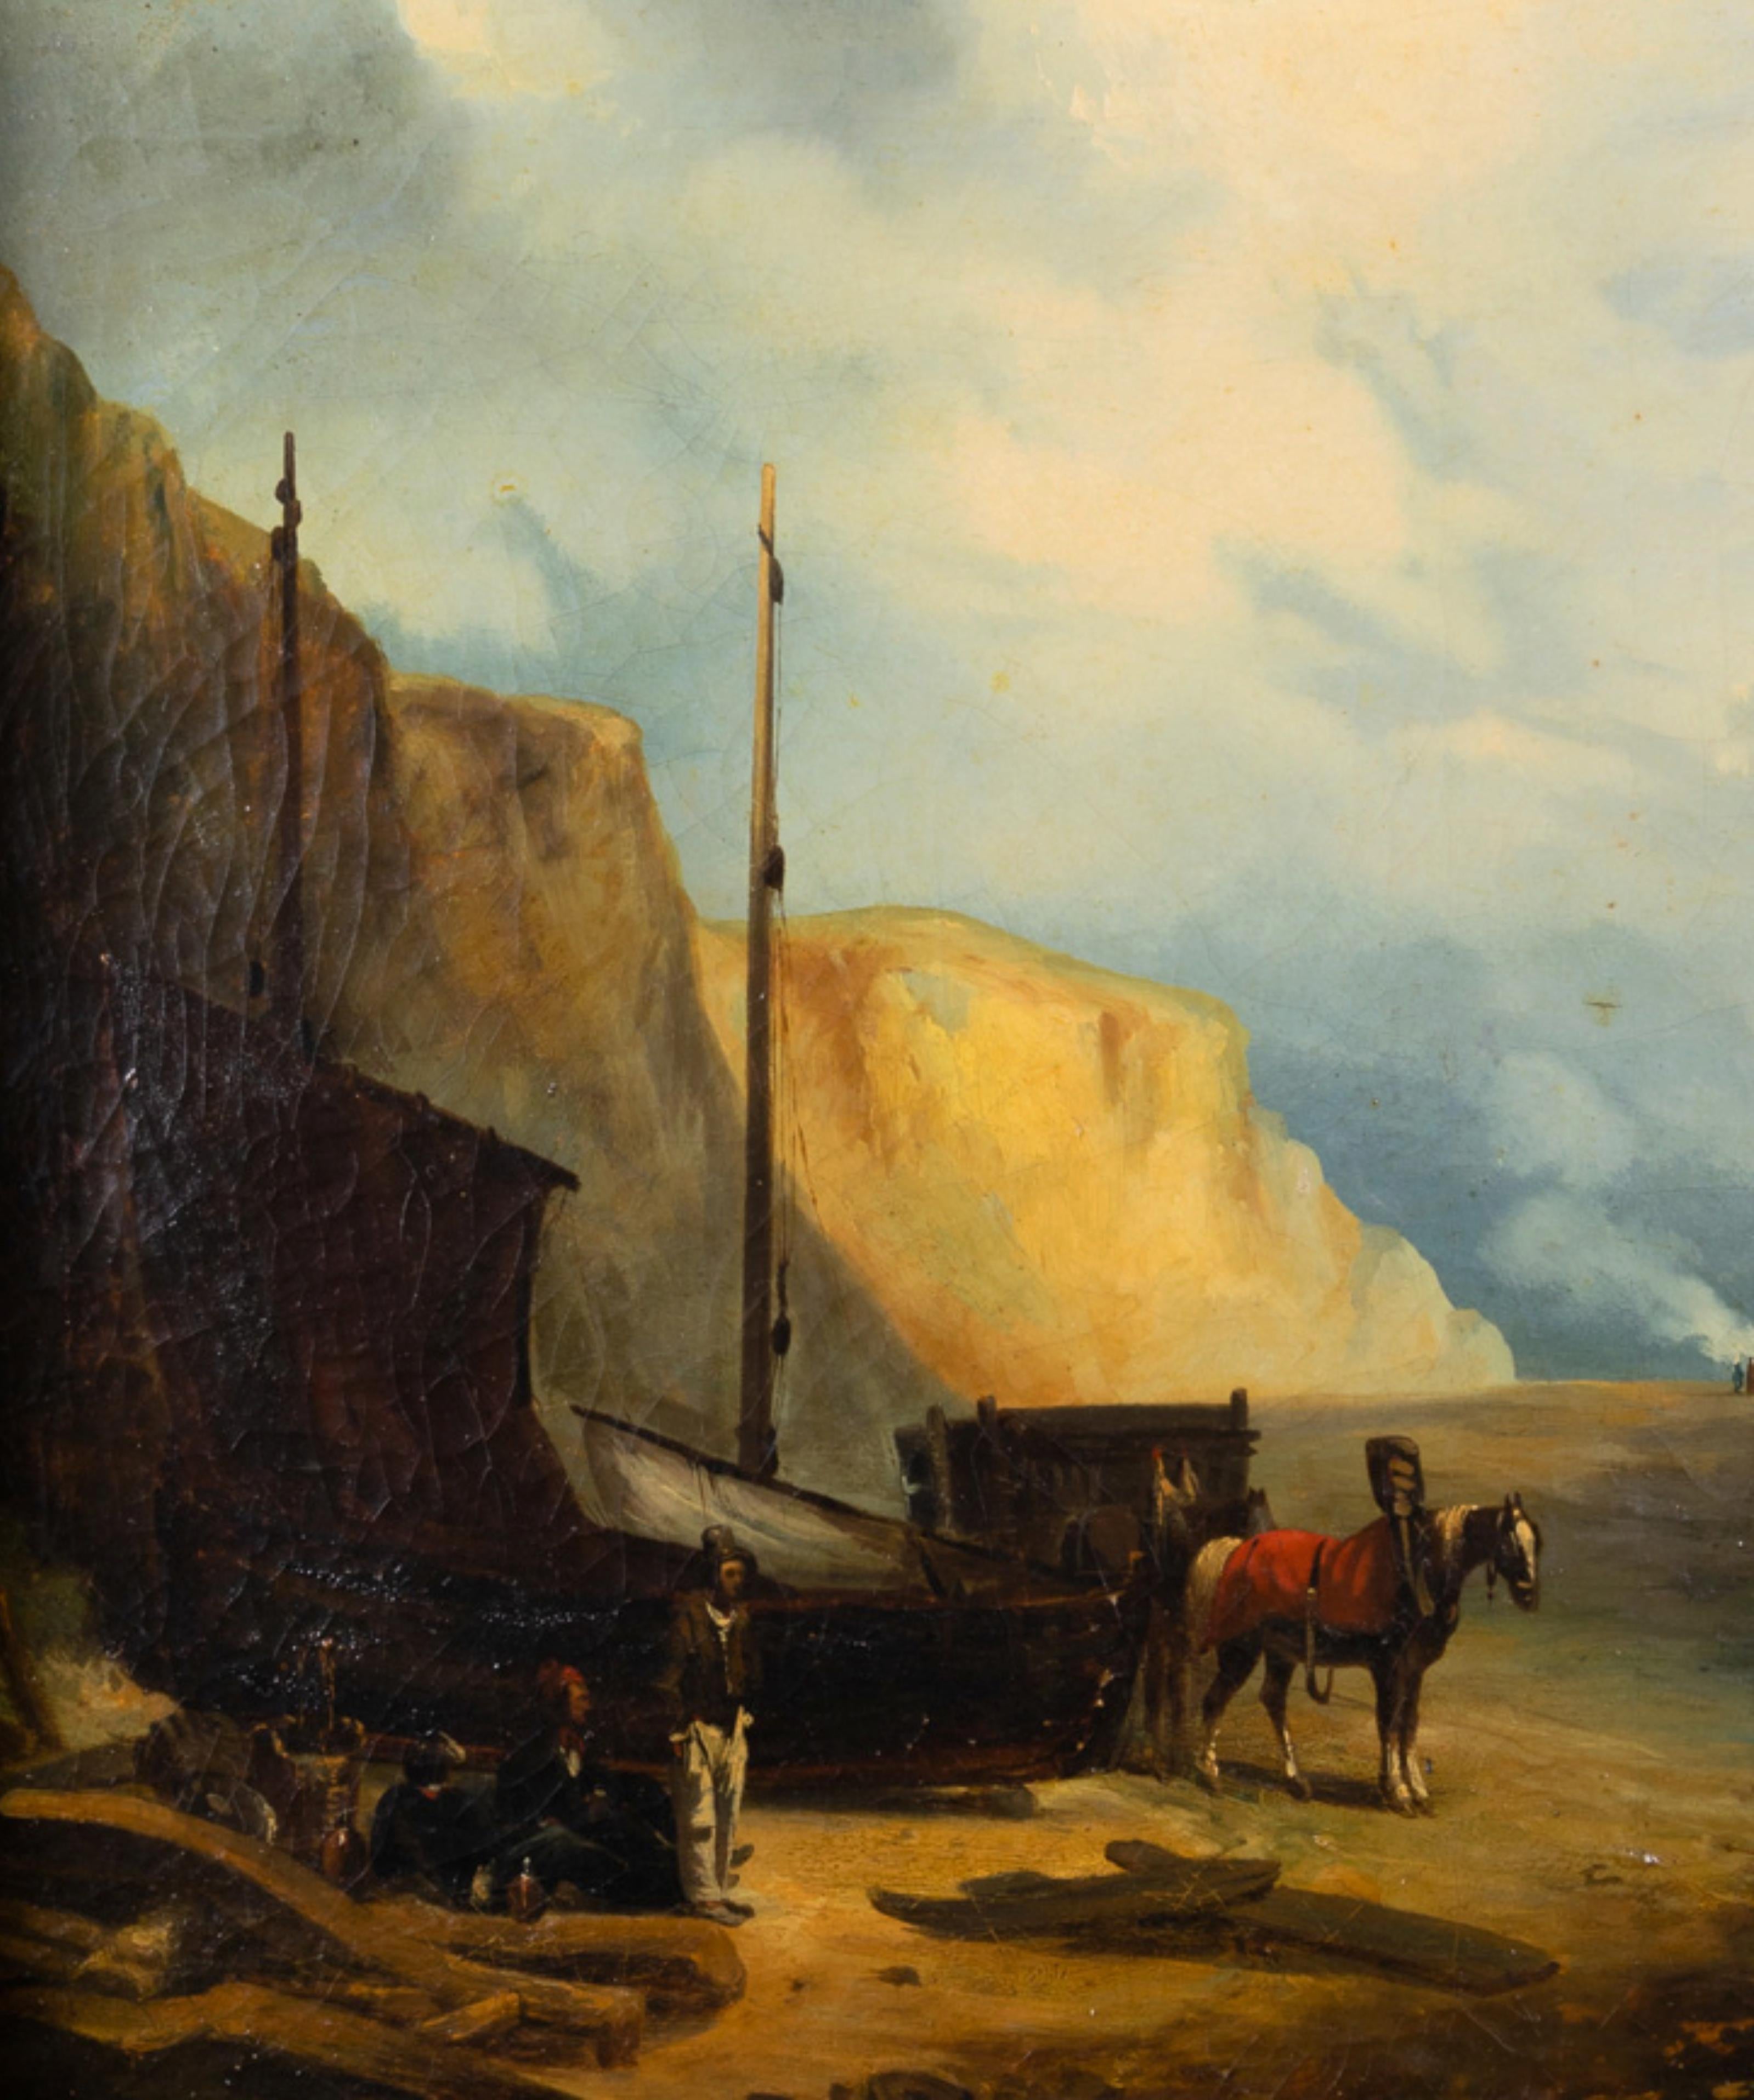 Im Bereich der Marinemalerei zeigt ein Gemälde aus der Romantik eine düstere und tragische Szene nach einer Schiffskatastrophe. Das im 19. Jahrhundert entstandene Gemälde zeigt eine Gruppe von Seeleuten und ein schiffbrüchiges Schiff, das von der